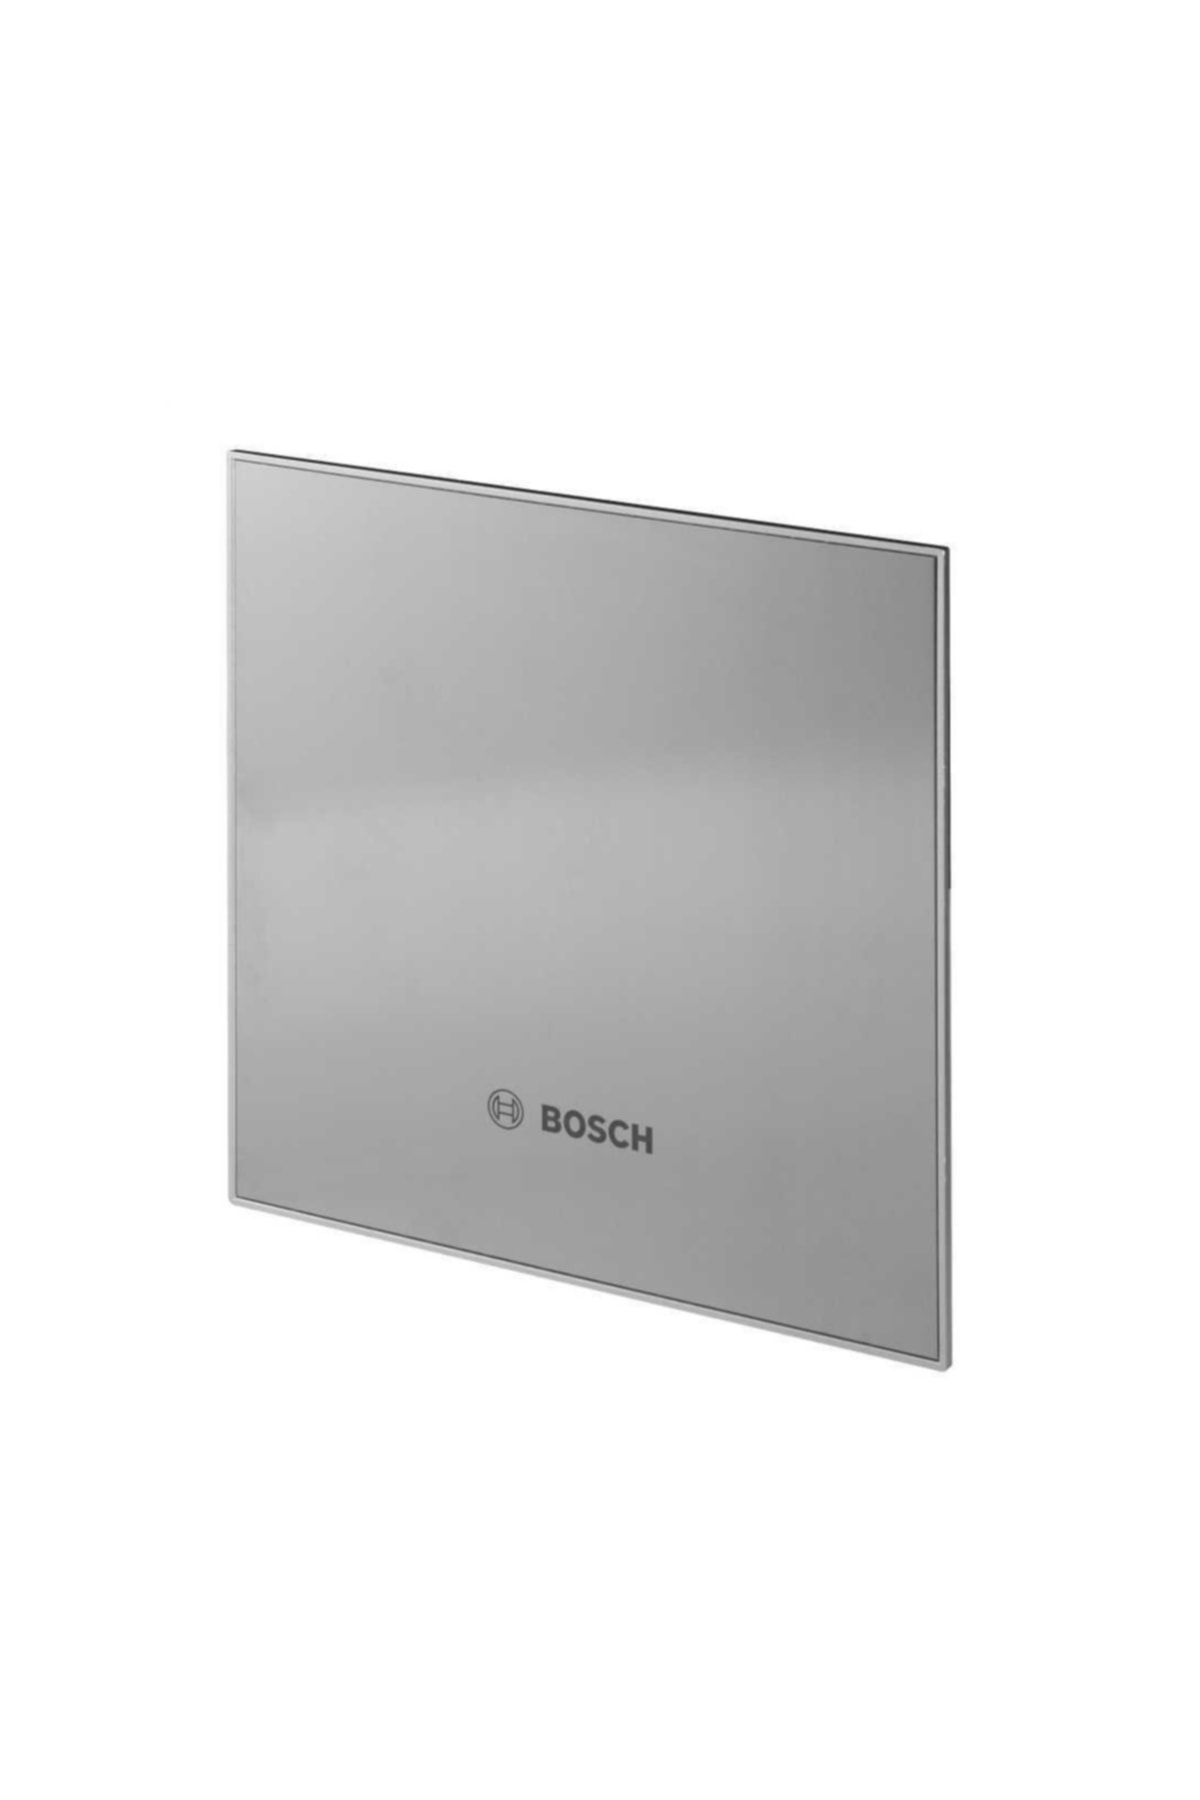 Bosch Dp100 I Inox Dekoratif Panel-f1700 Ws125 Serisi Aspiratör Içindir.sadece Kapaktır